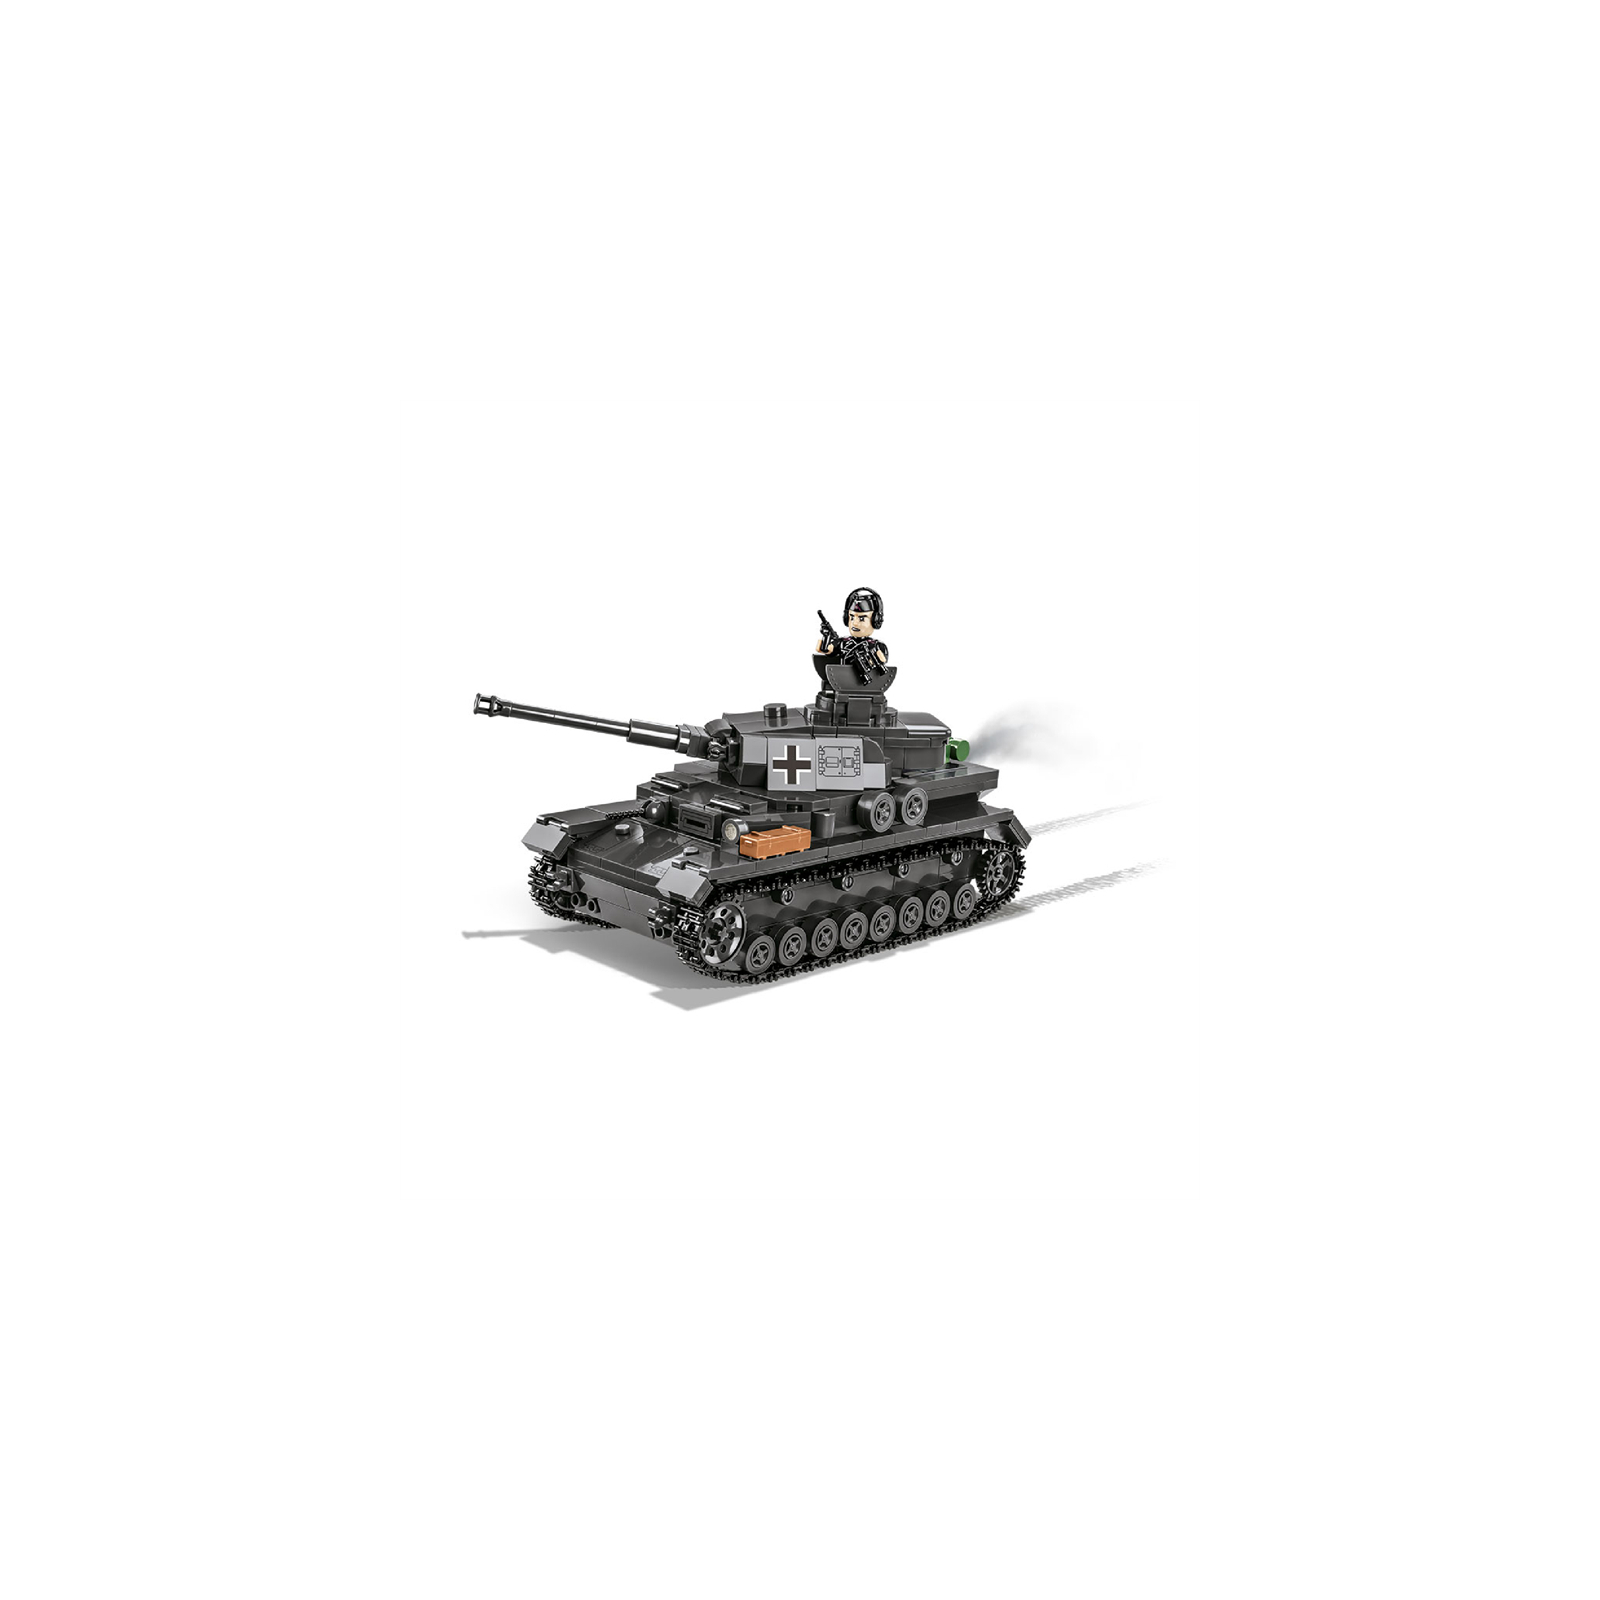 Конструктор Cobi Company of Heroes 3 Танк Panzer IV, 610 деталей (COBI-3045) изображение 11